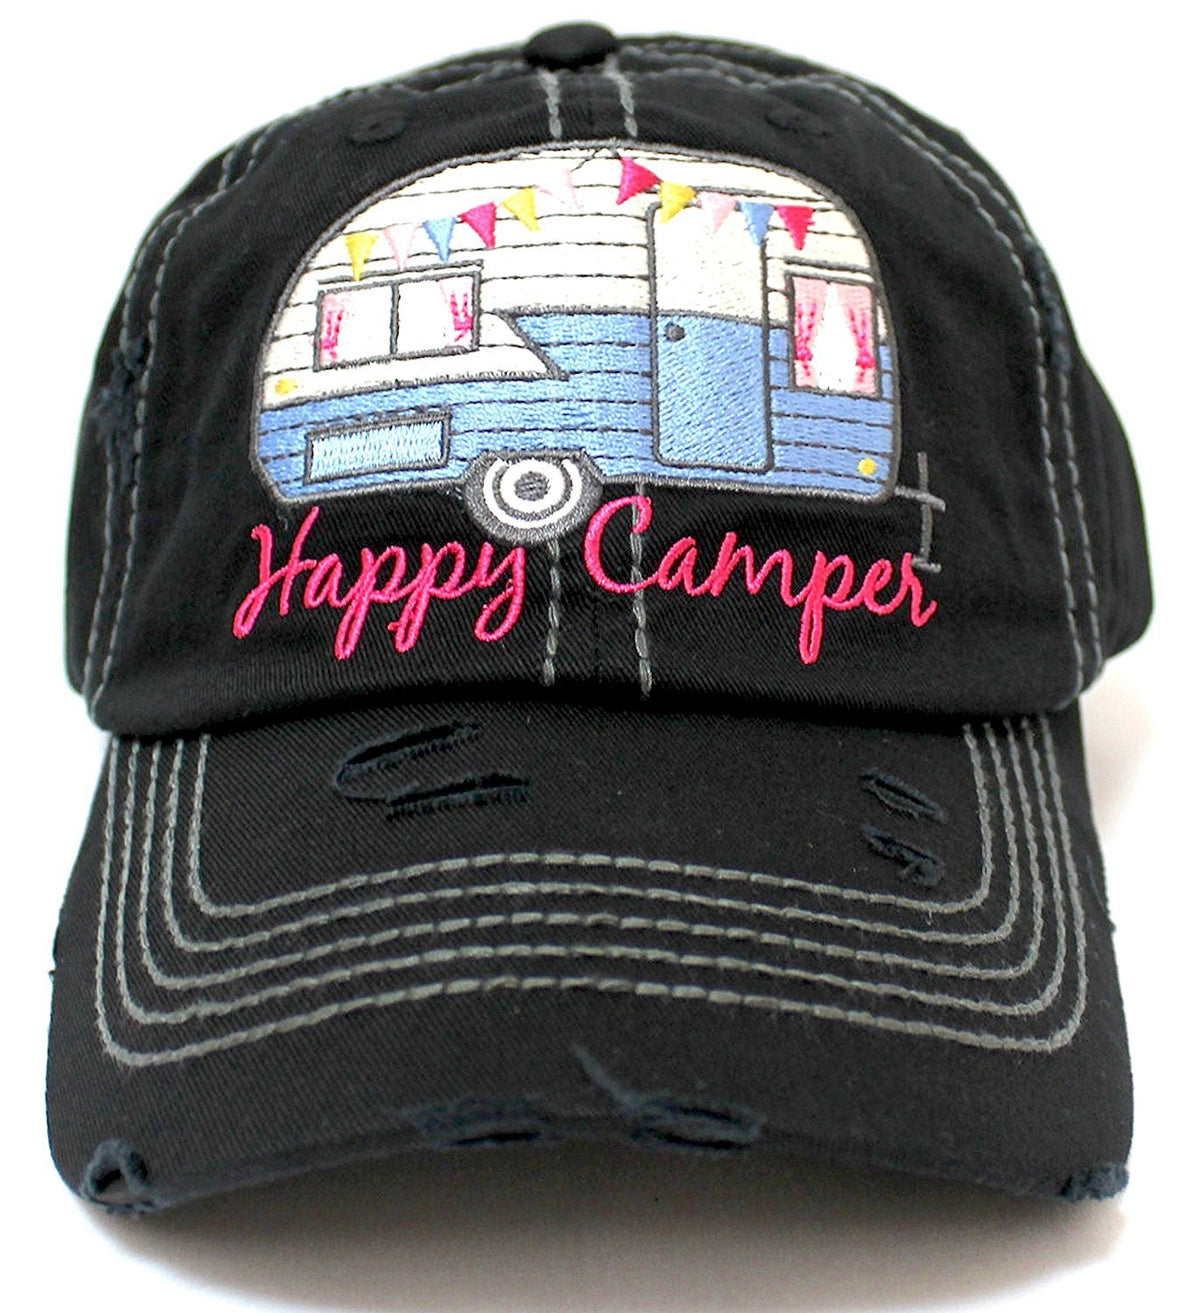 BLACK "Happy Camper" Embroidery Distressed Vintage Cap - Caps 'N Vintage 